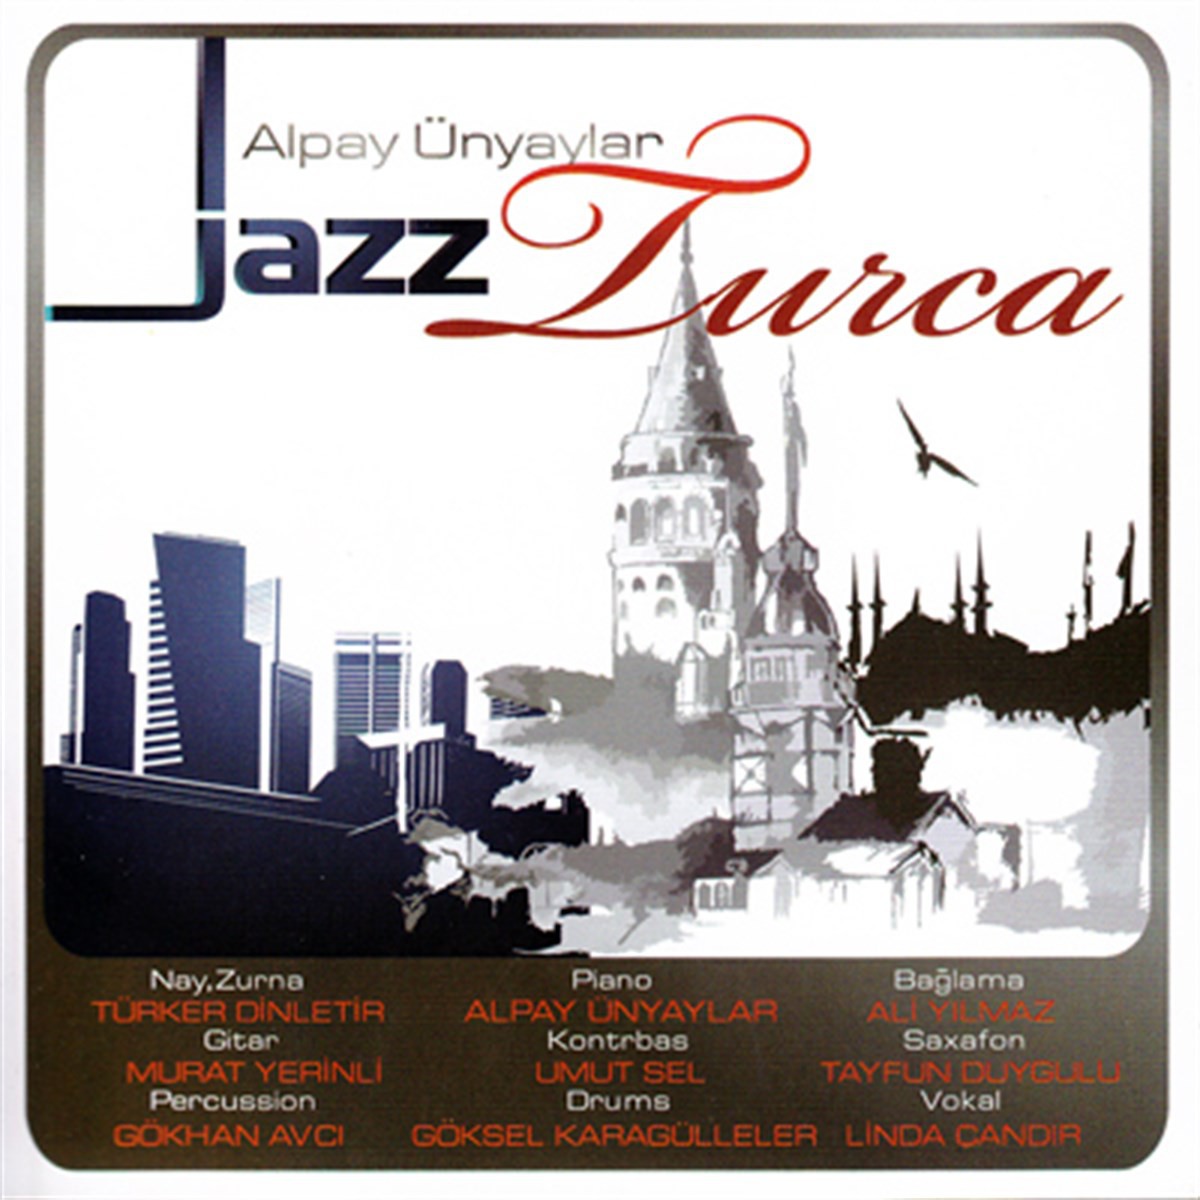 Alpay Ünyaylar Jazz Turca